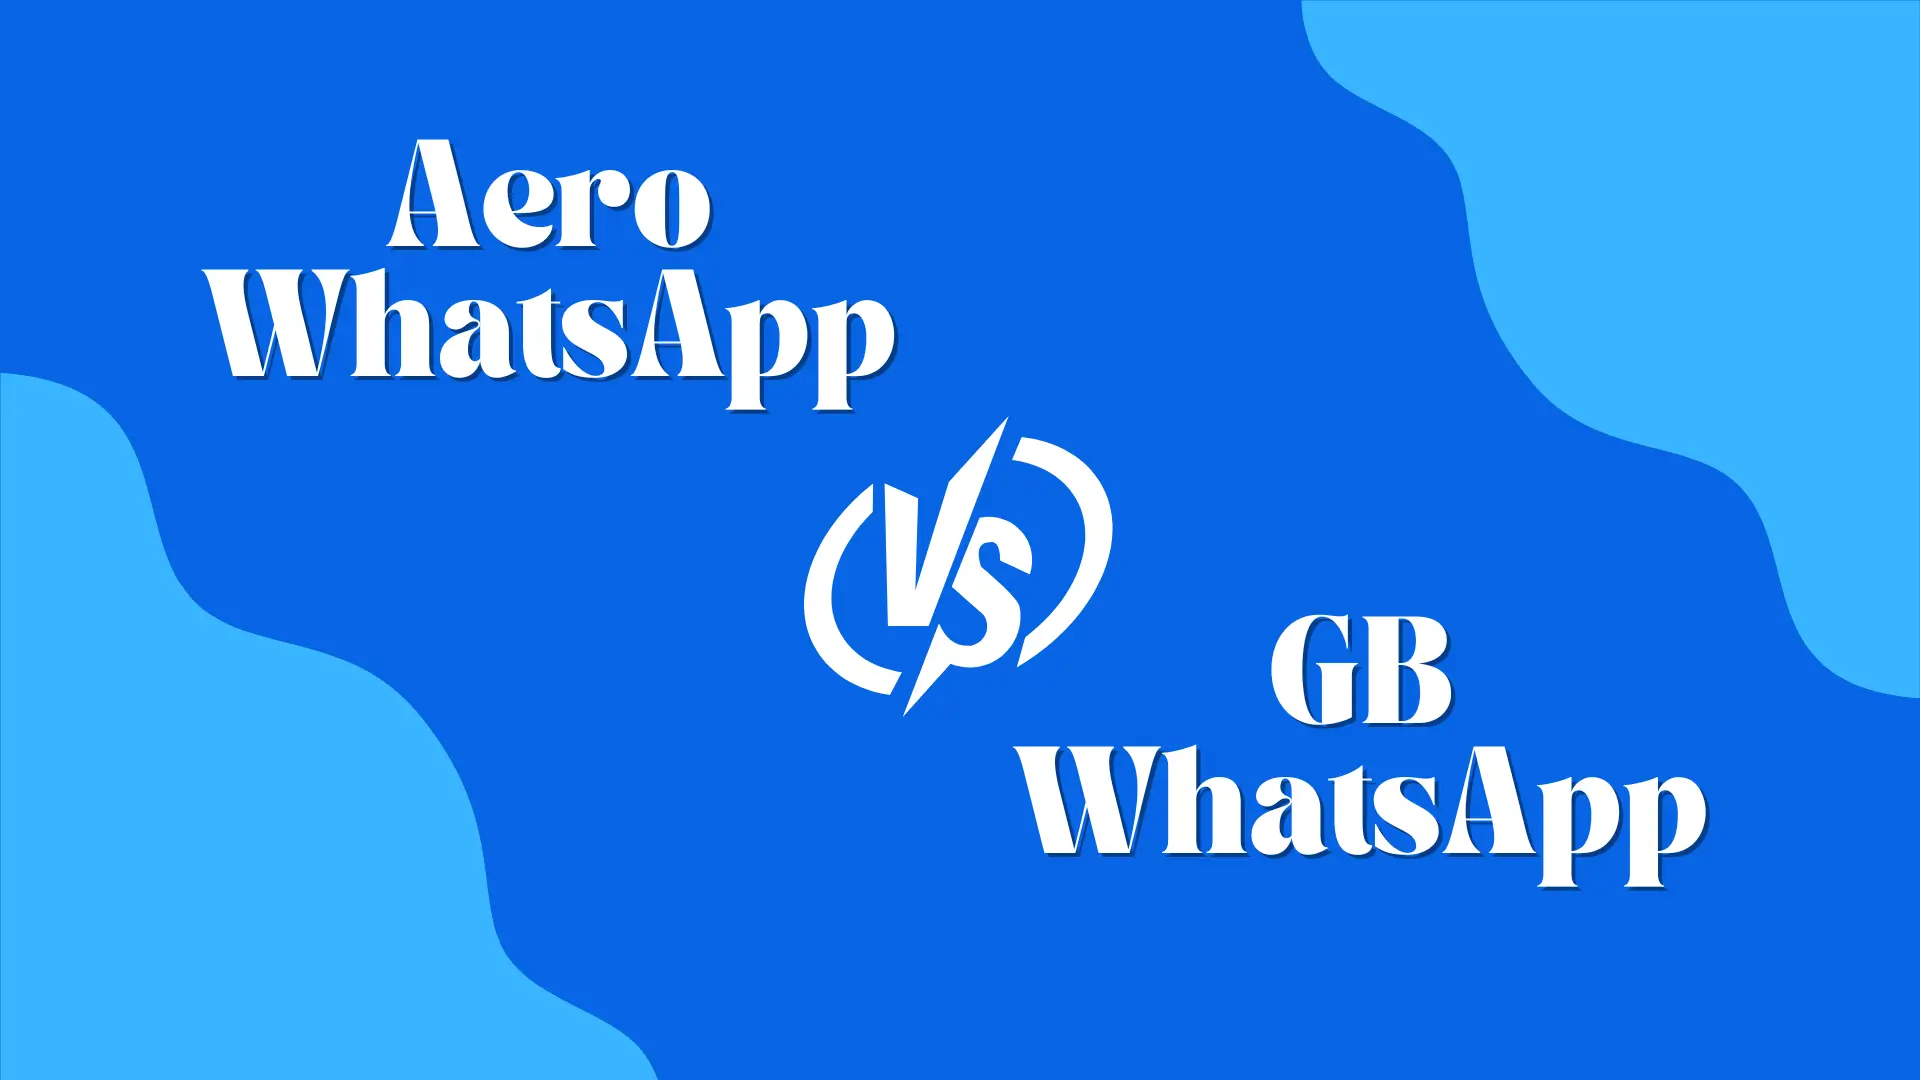 Aero WhatsApp Versus GB WhatsApp